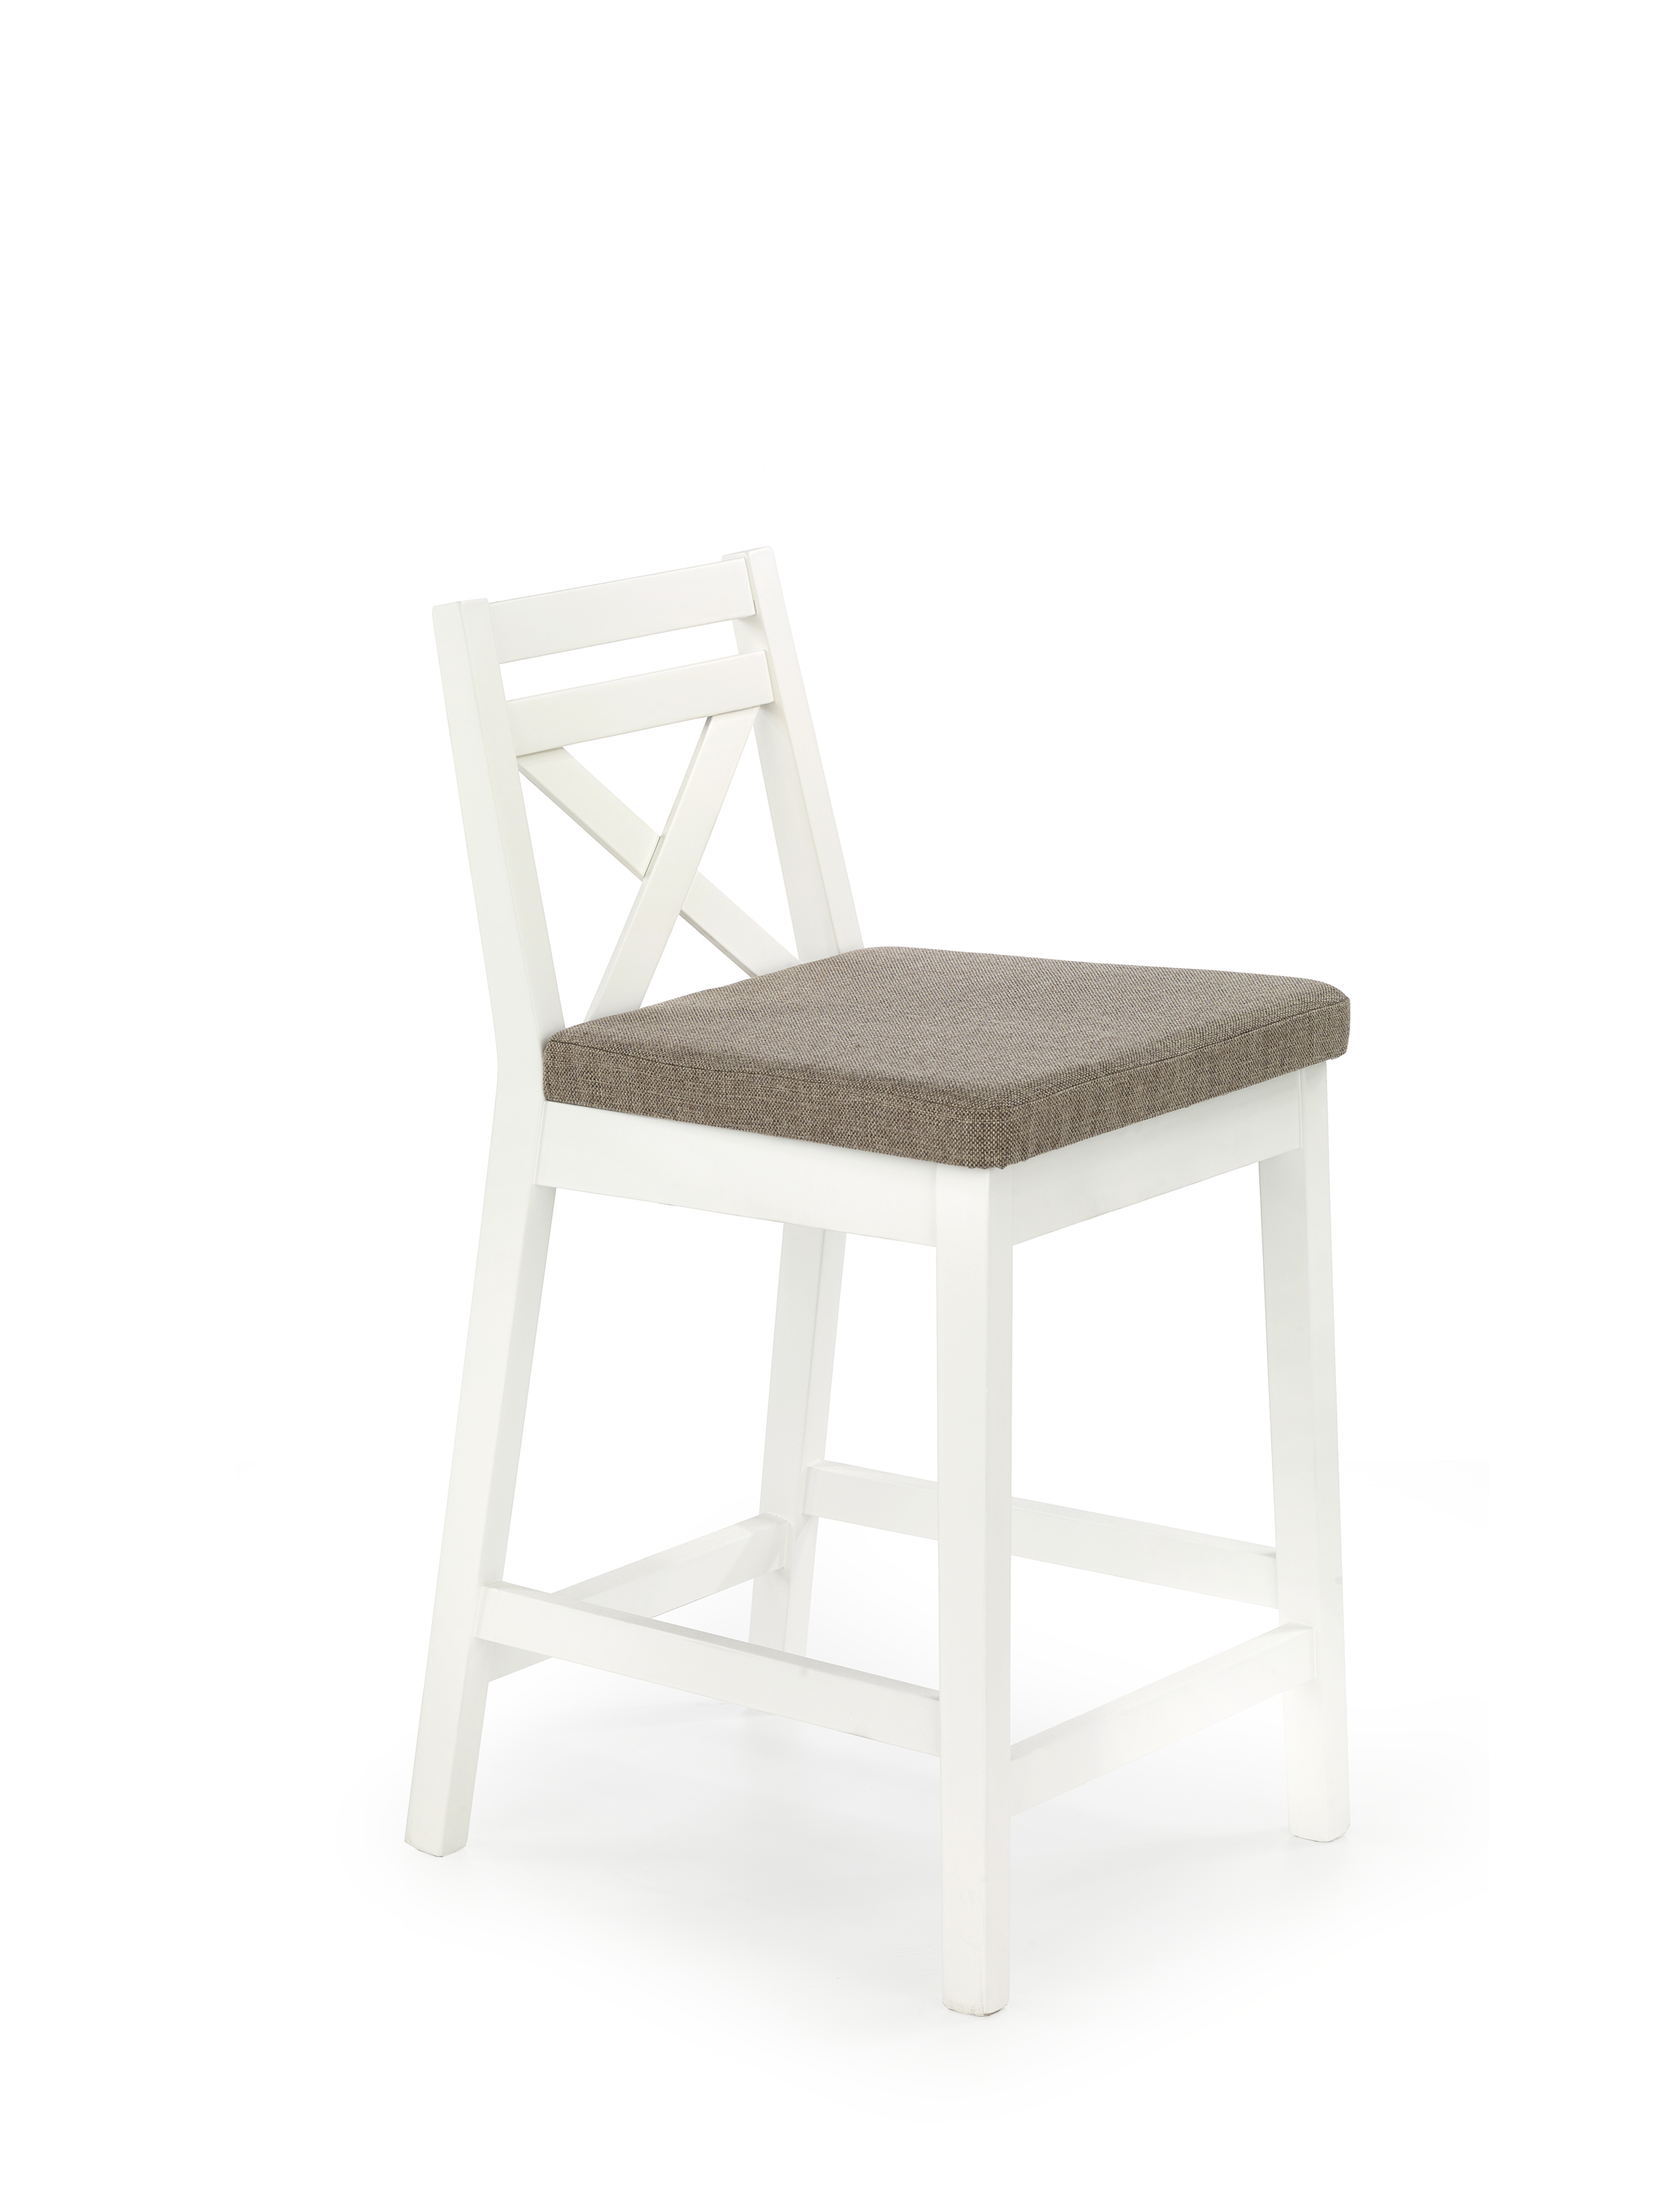 BORYS LOW krzesło barowe niskie biały